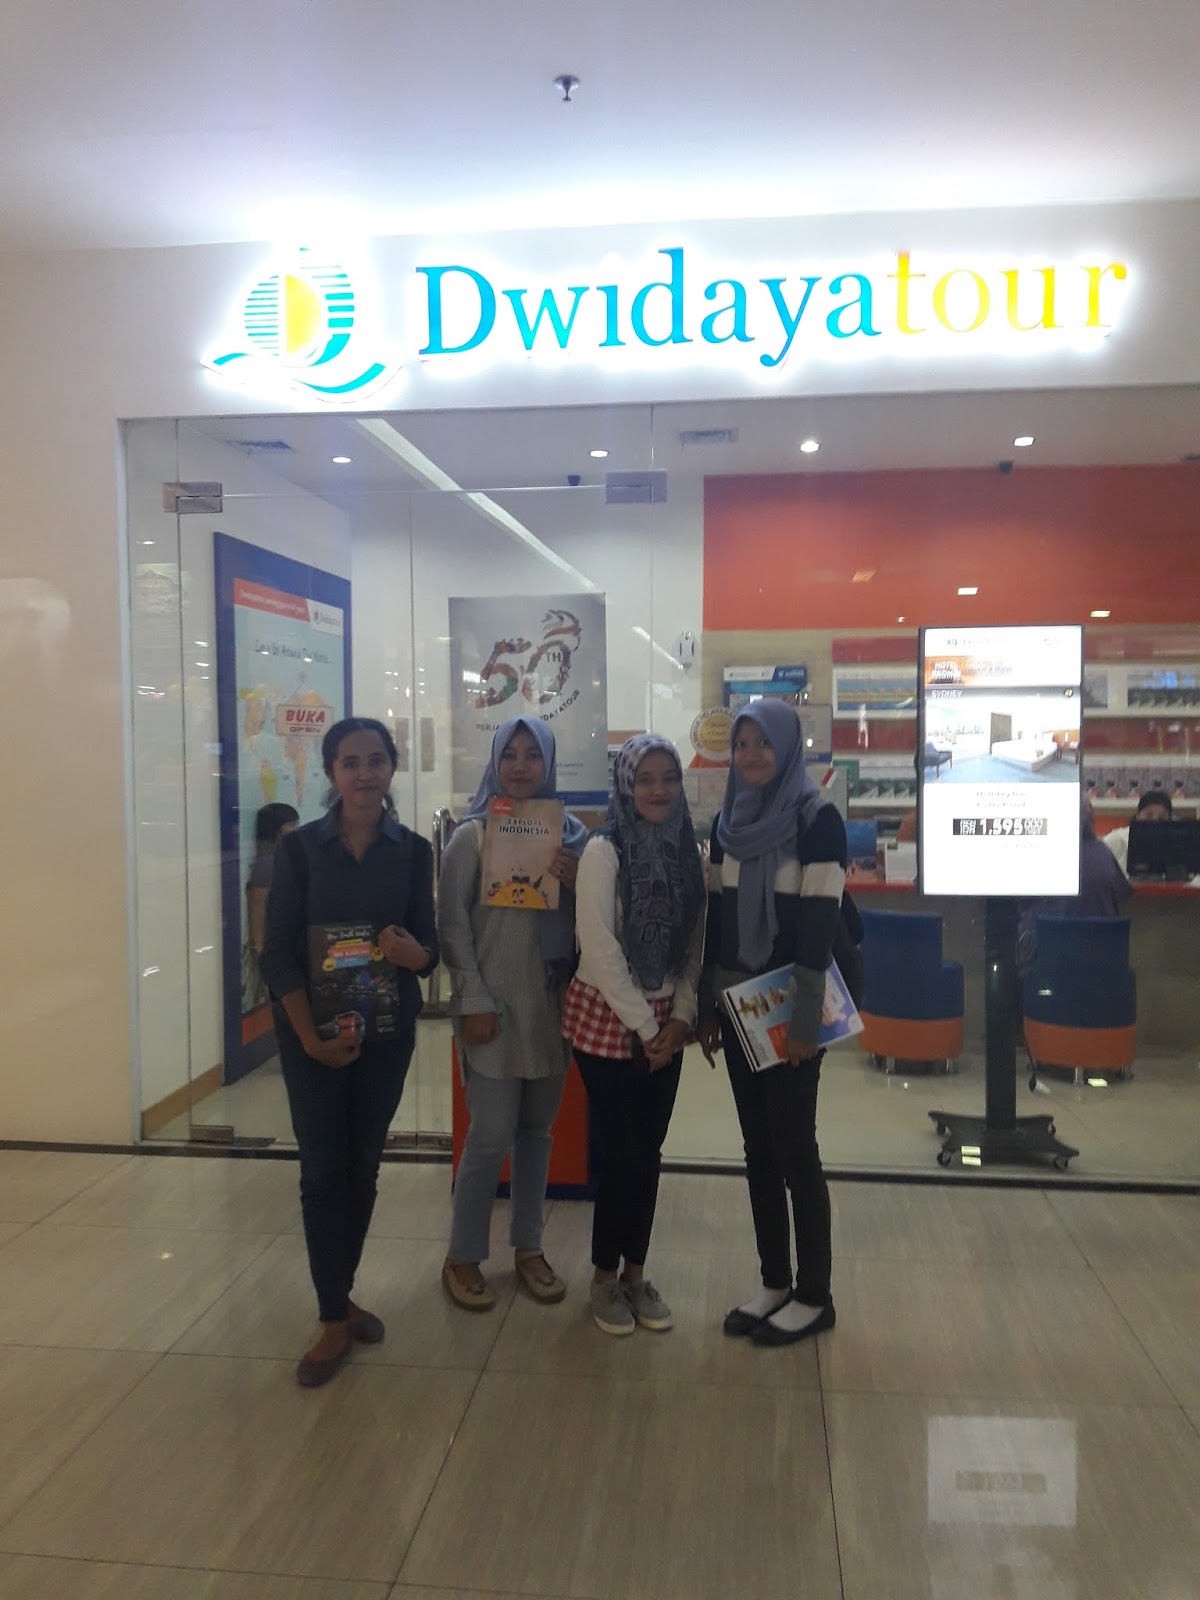 dwidaya tour and travel surabaya